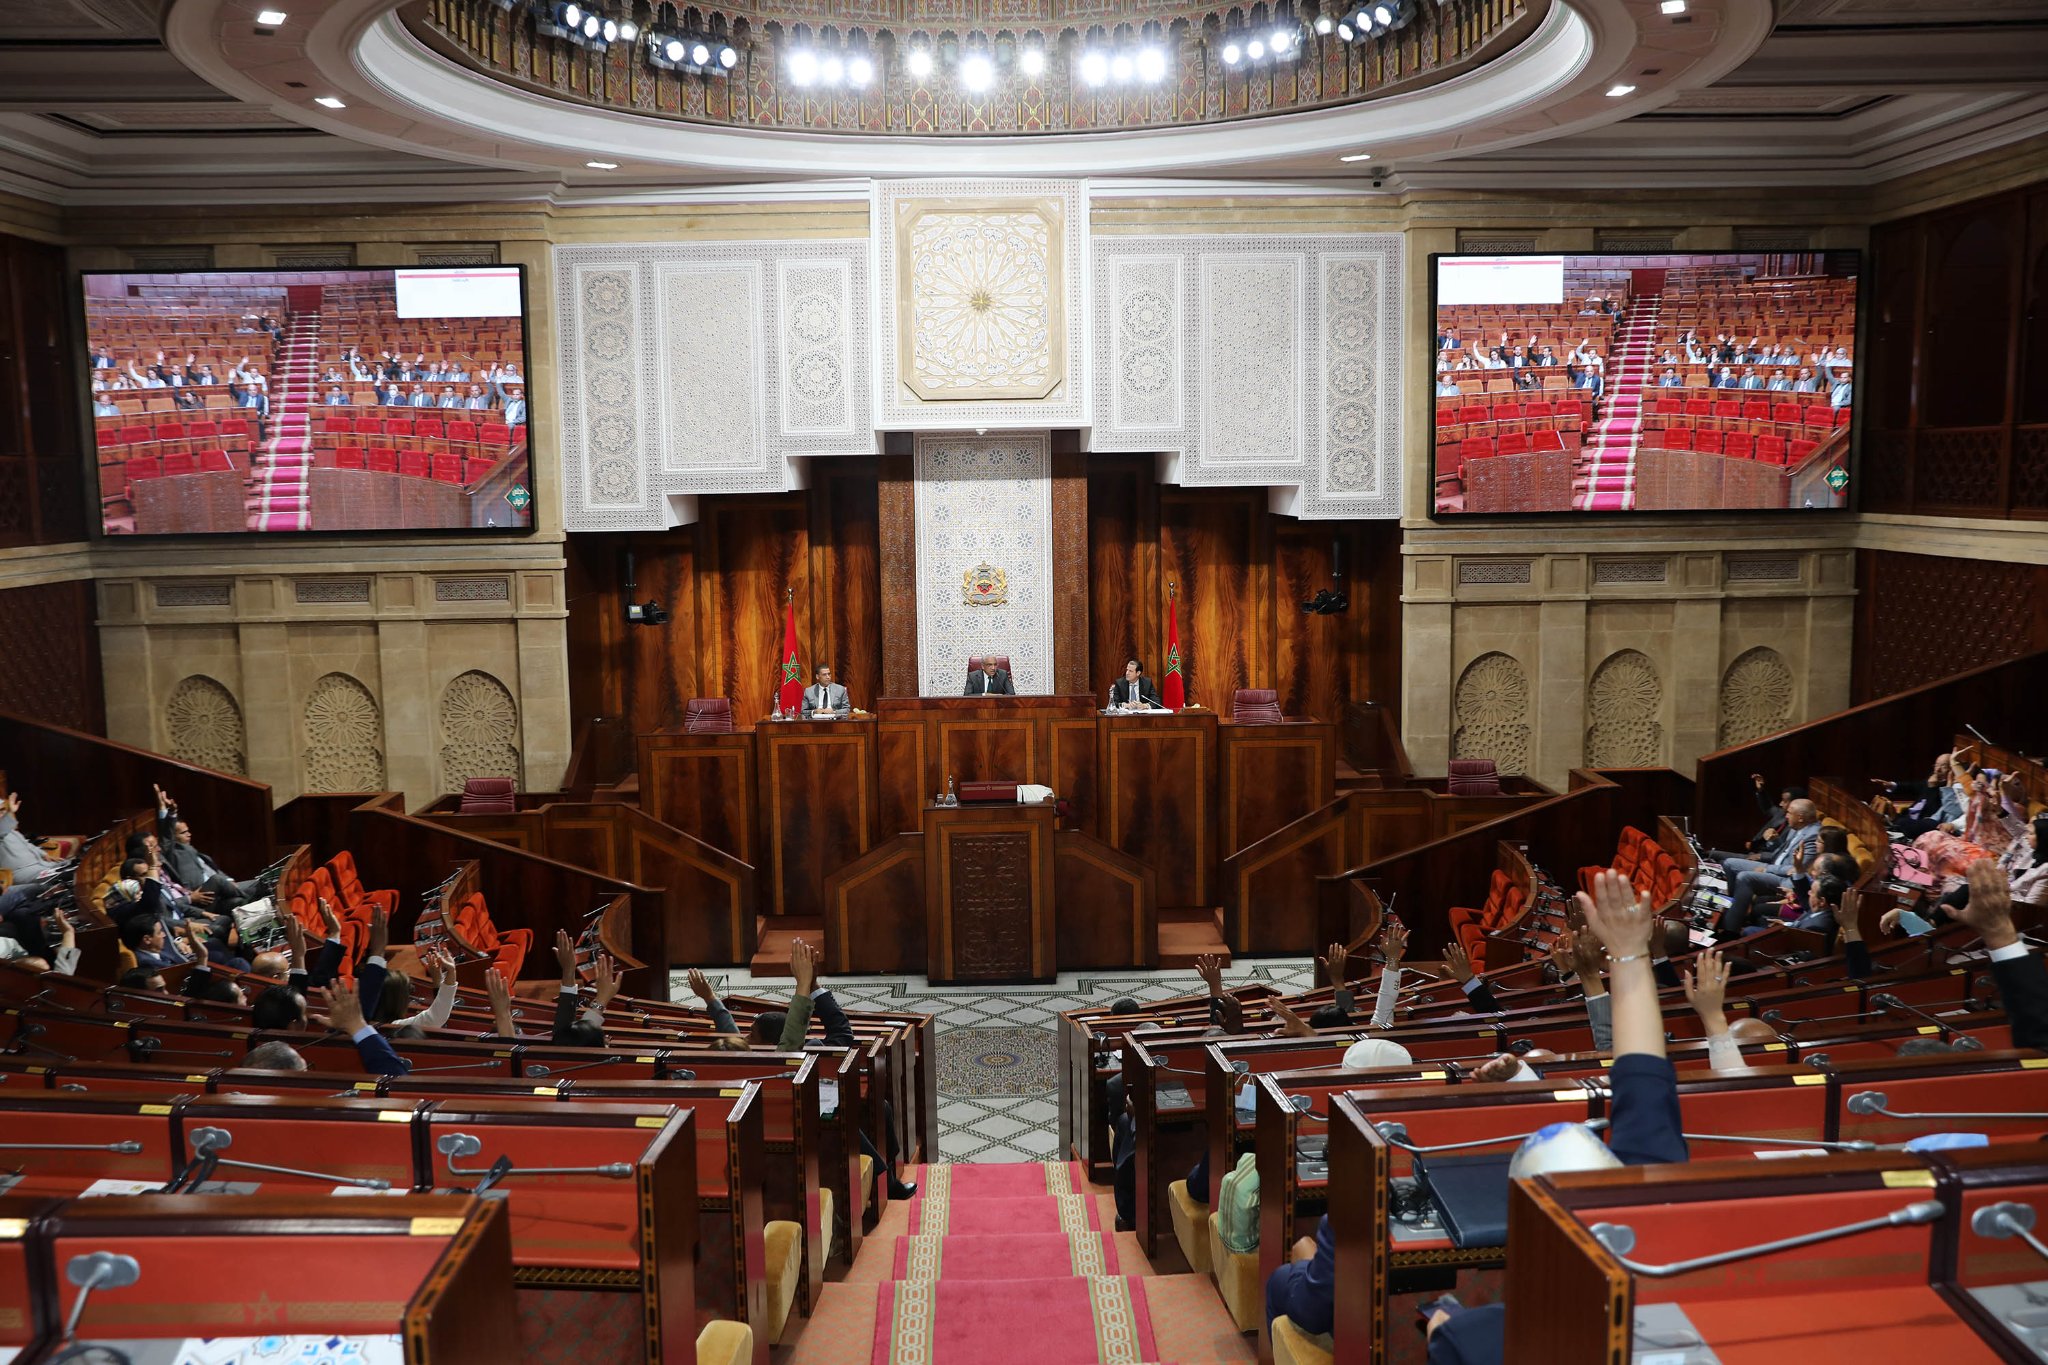 المحكمة الدستورية ترفض إلغاء مقعدين برلمانيين للحركة والاستقلال بالدار البيضاء